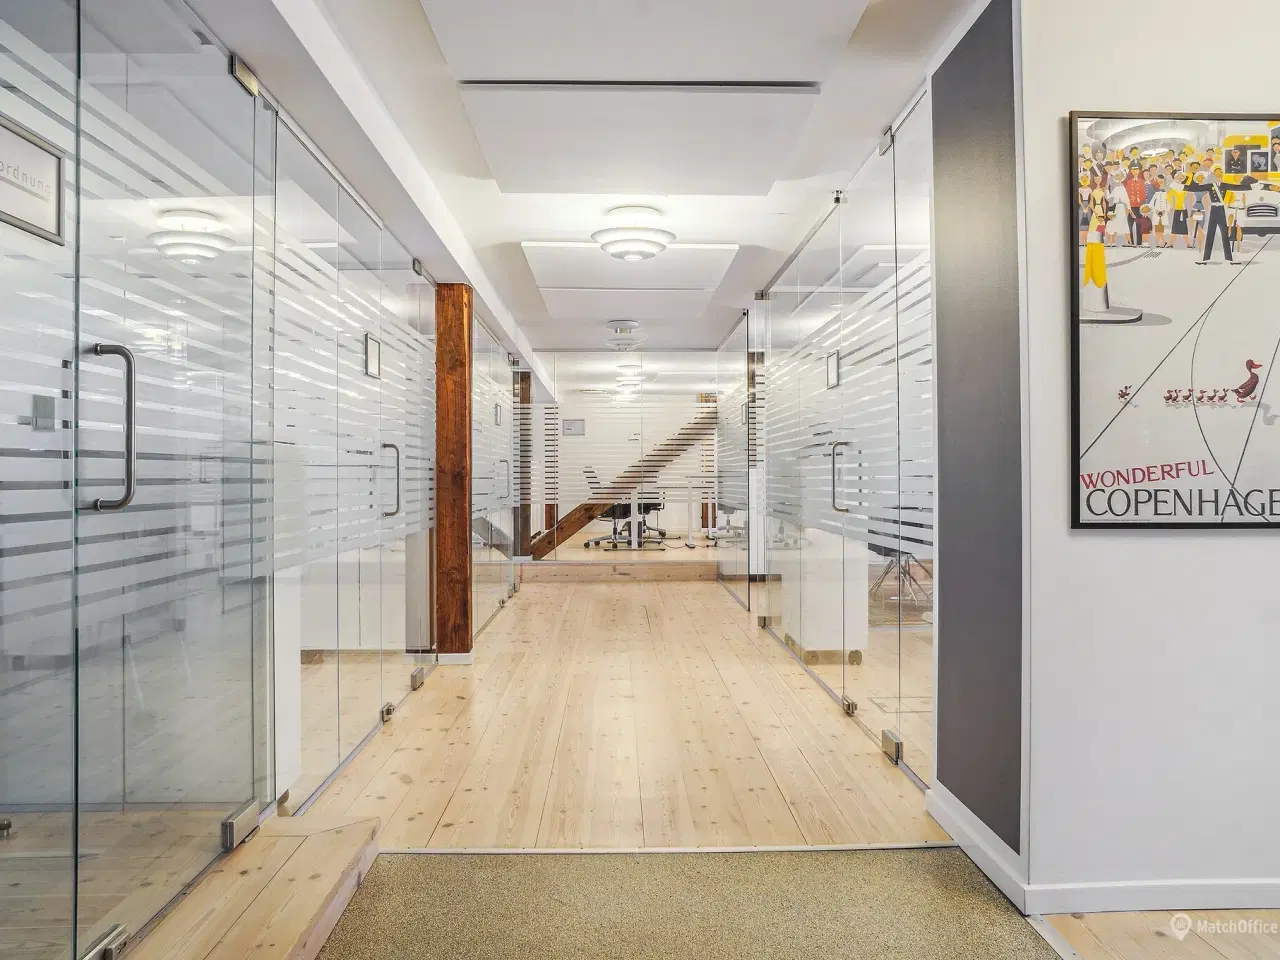 Billede 7 - 423 m² eksklusive kontorlokaler udlejes i flot City ejendom